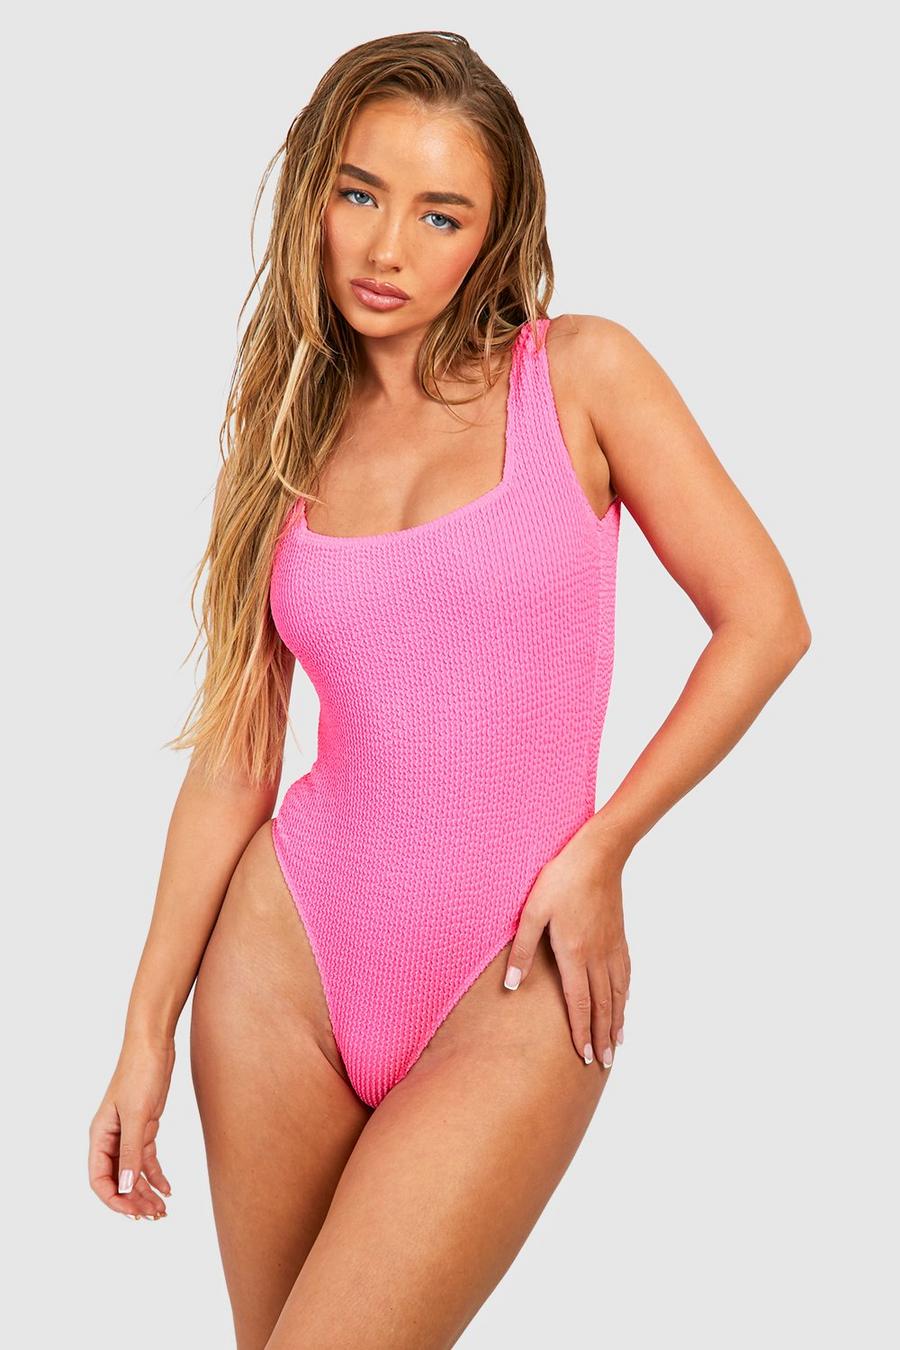 Badeanzug in Knitteroptik mit geradem Ausschnitt, Hot pink